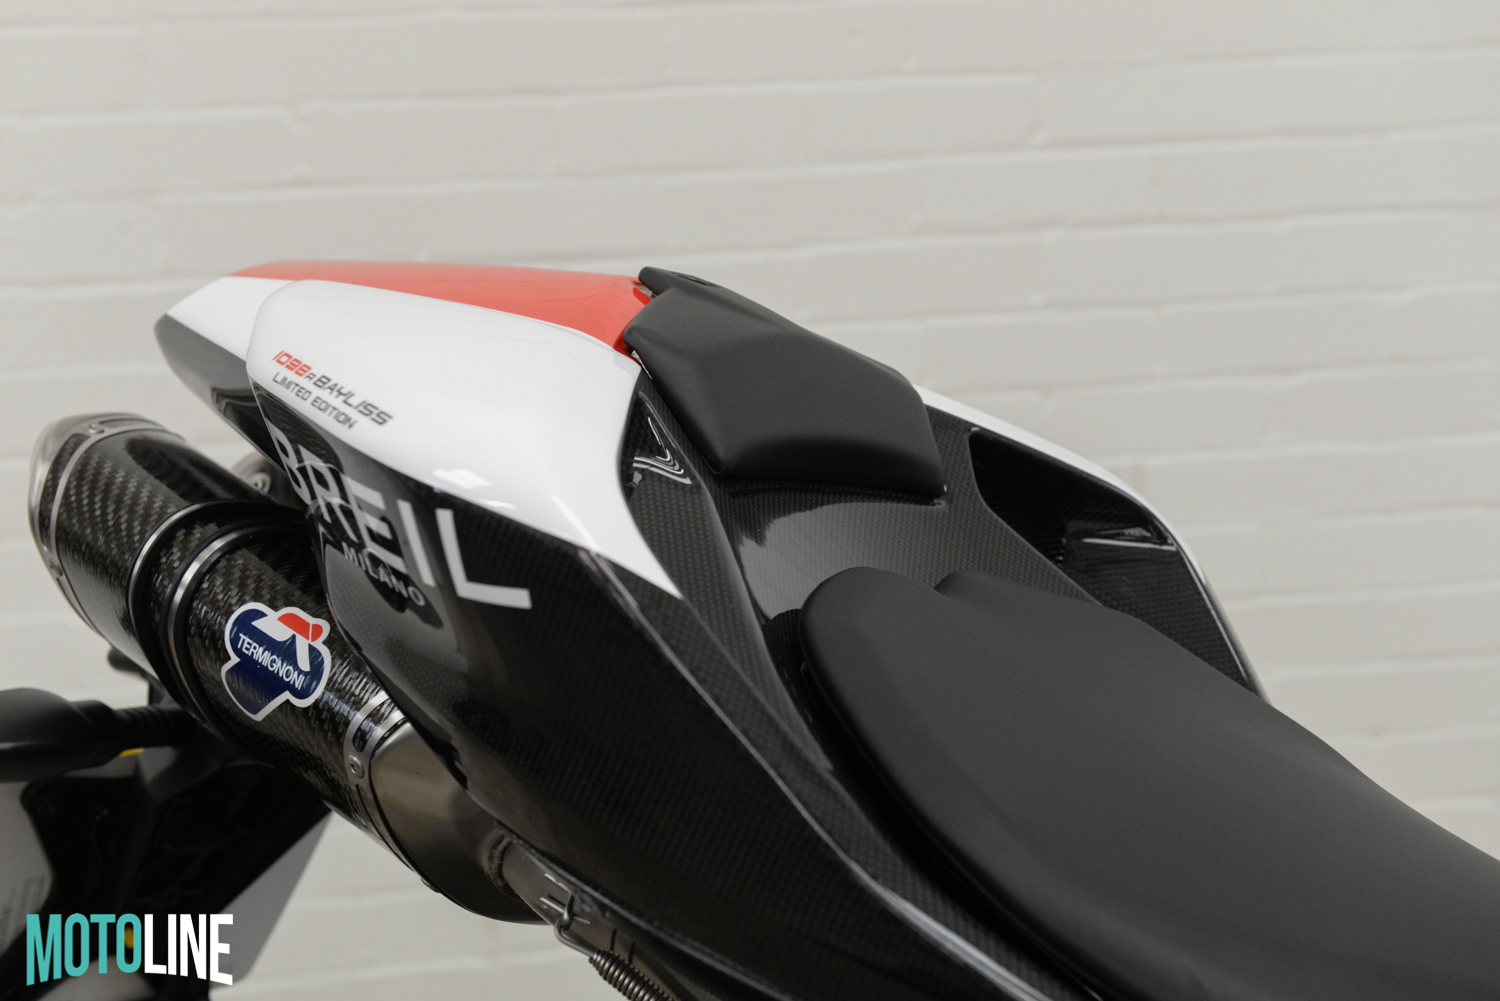 2007 Ducati 1098 S Troy Bayliss “21” Replica